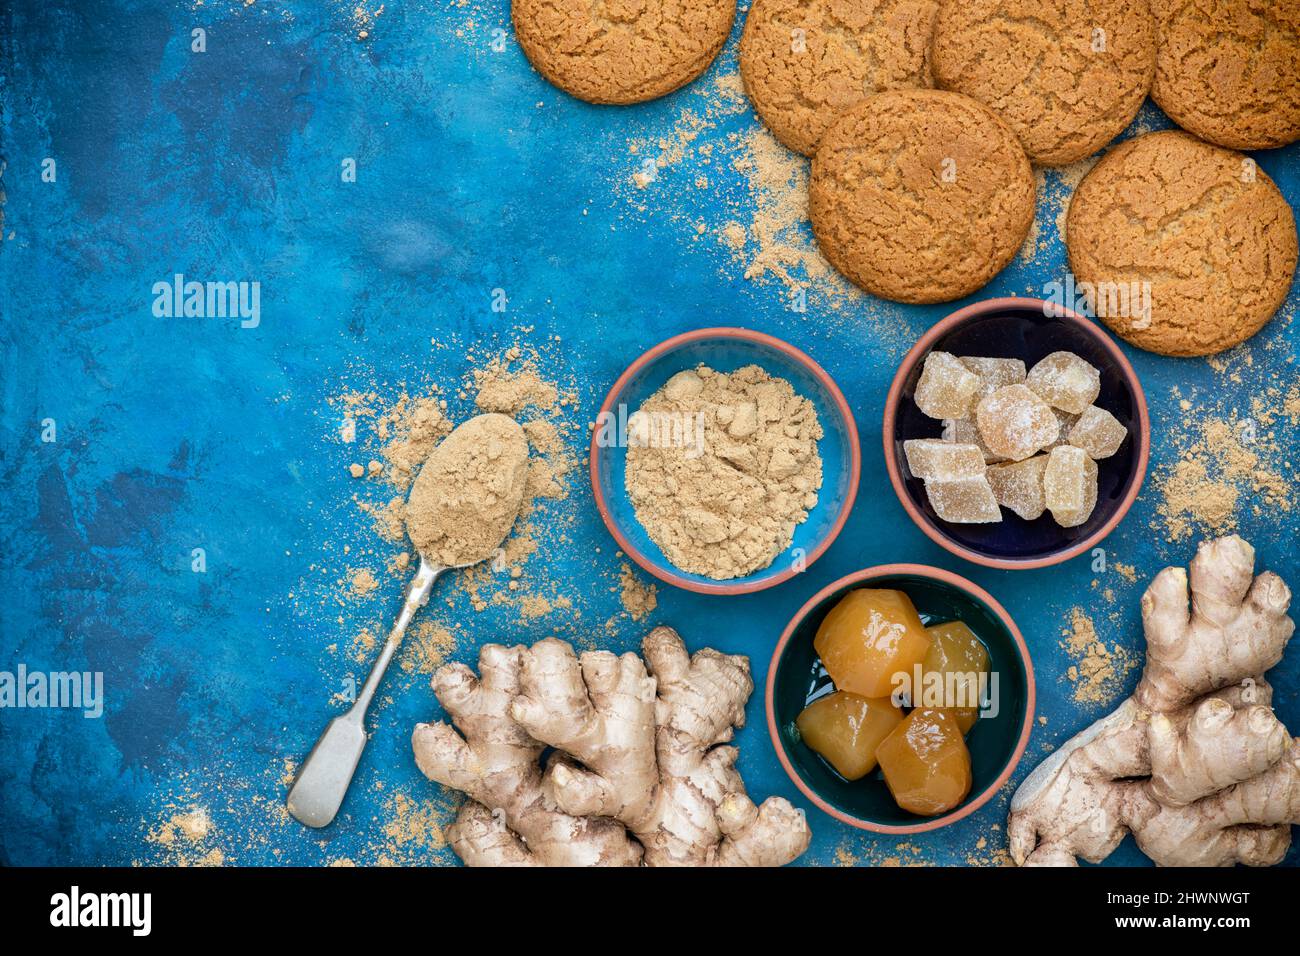 Zenzero in polvere, radice di zenzero, zenzero cristallino e zenzero a gambo con biscotti fatti in casa di zenzero su sfondo blu Foto Stock